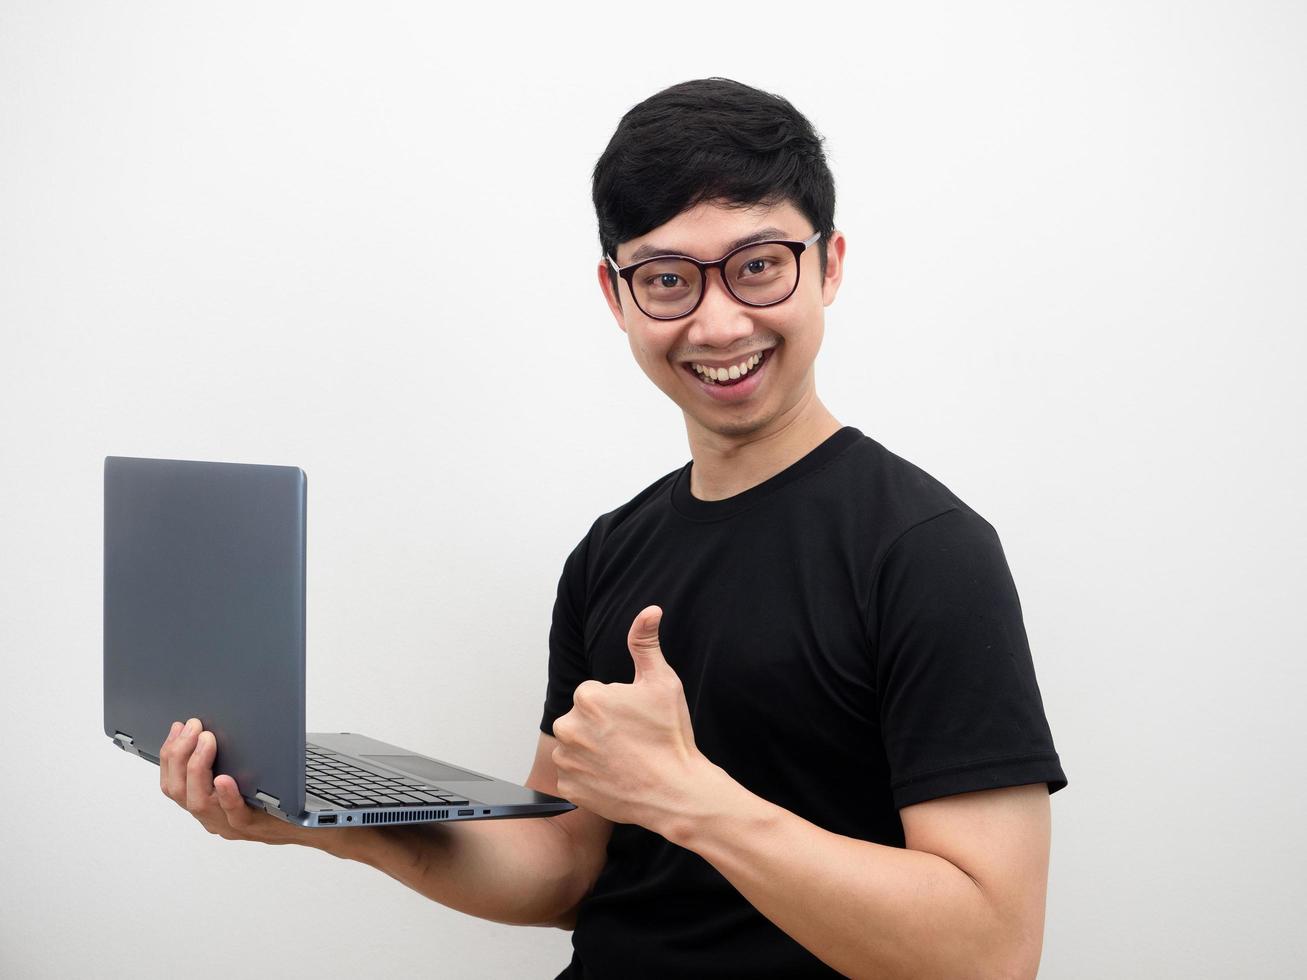 homme asiatique portant des lunettes visage confiant tenant un ordinateur portable montrer le pouce vers le haut sourire heureux sur fond blanc photo